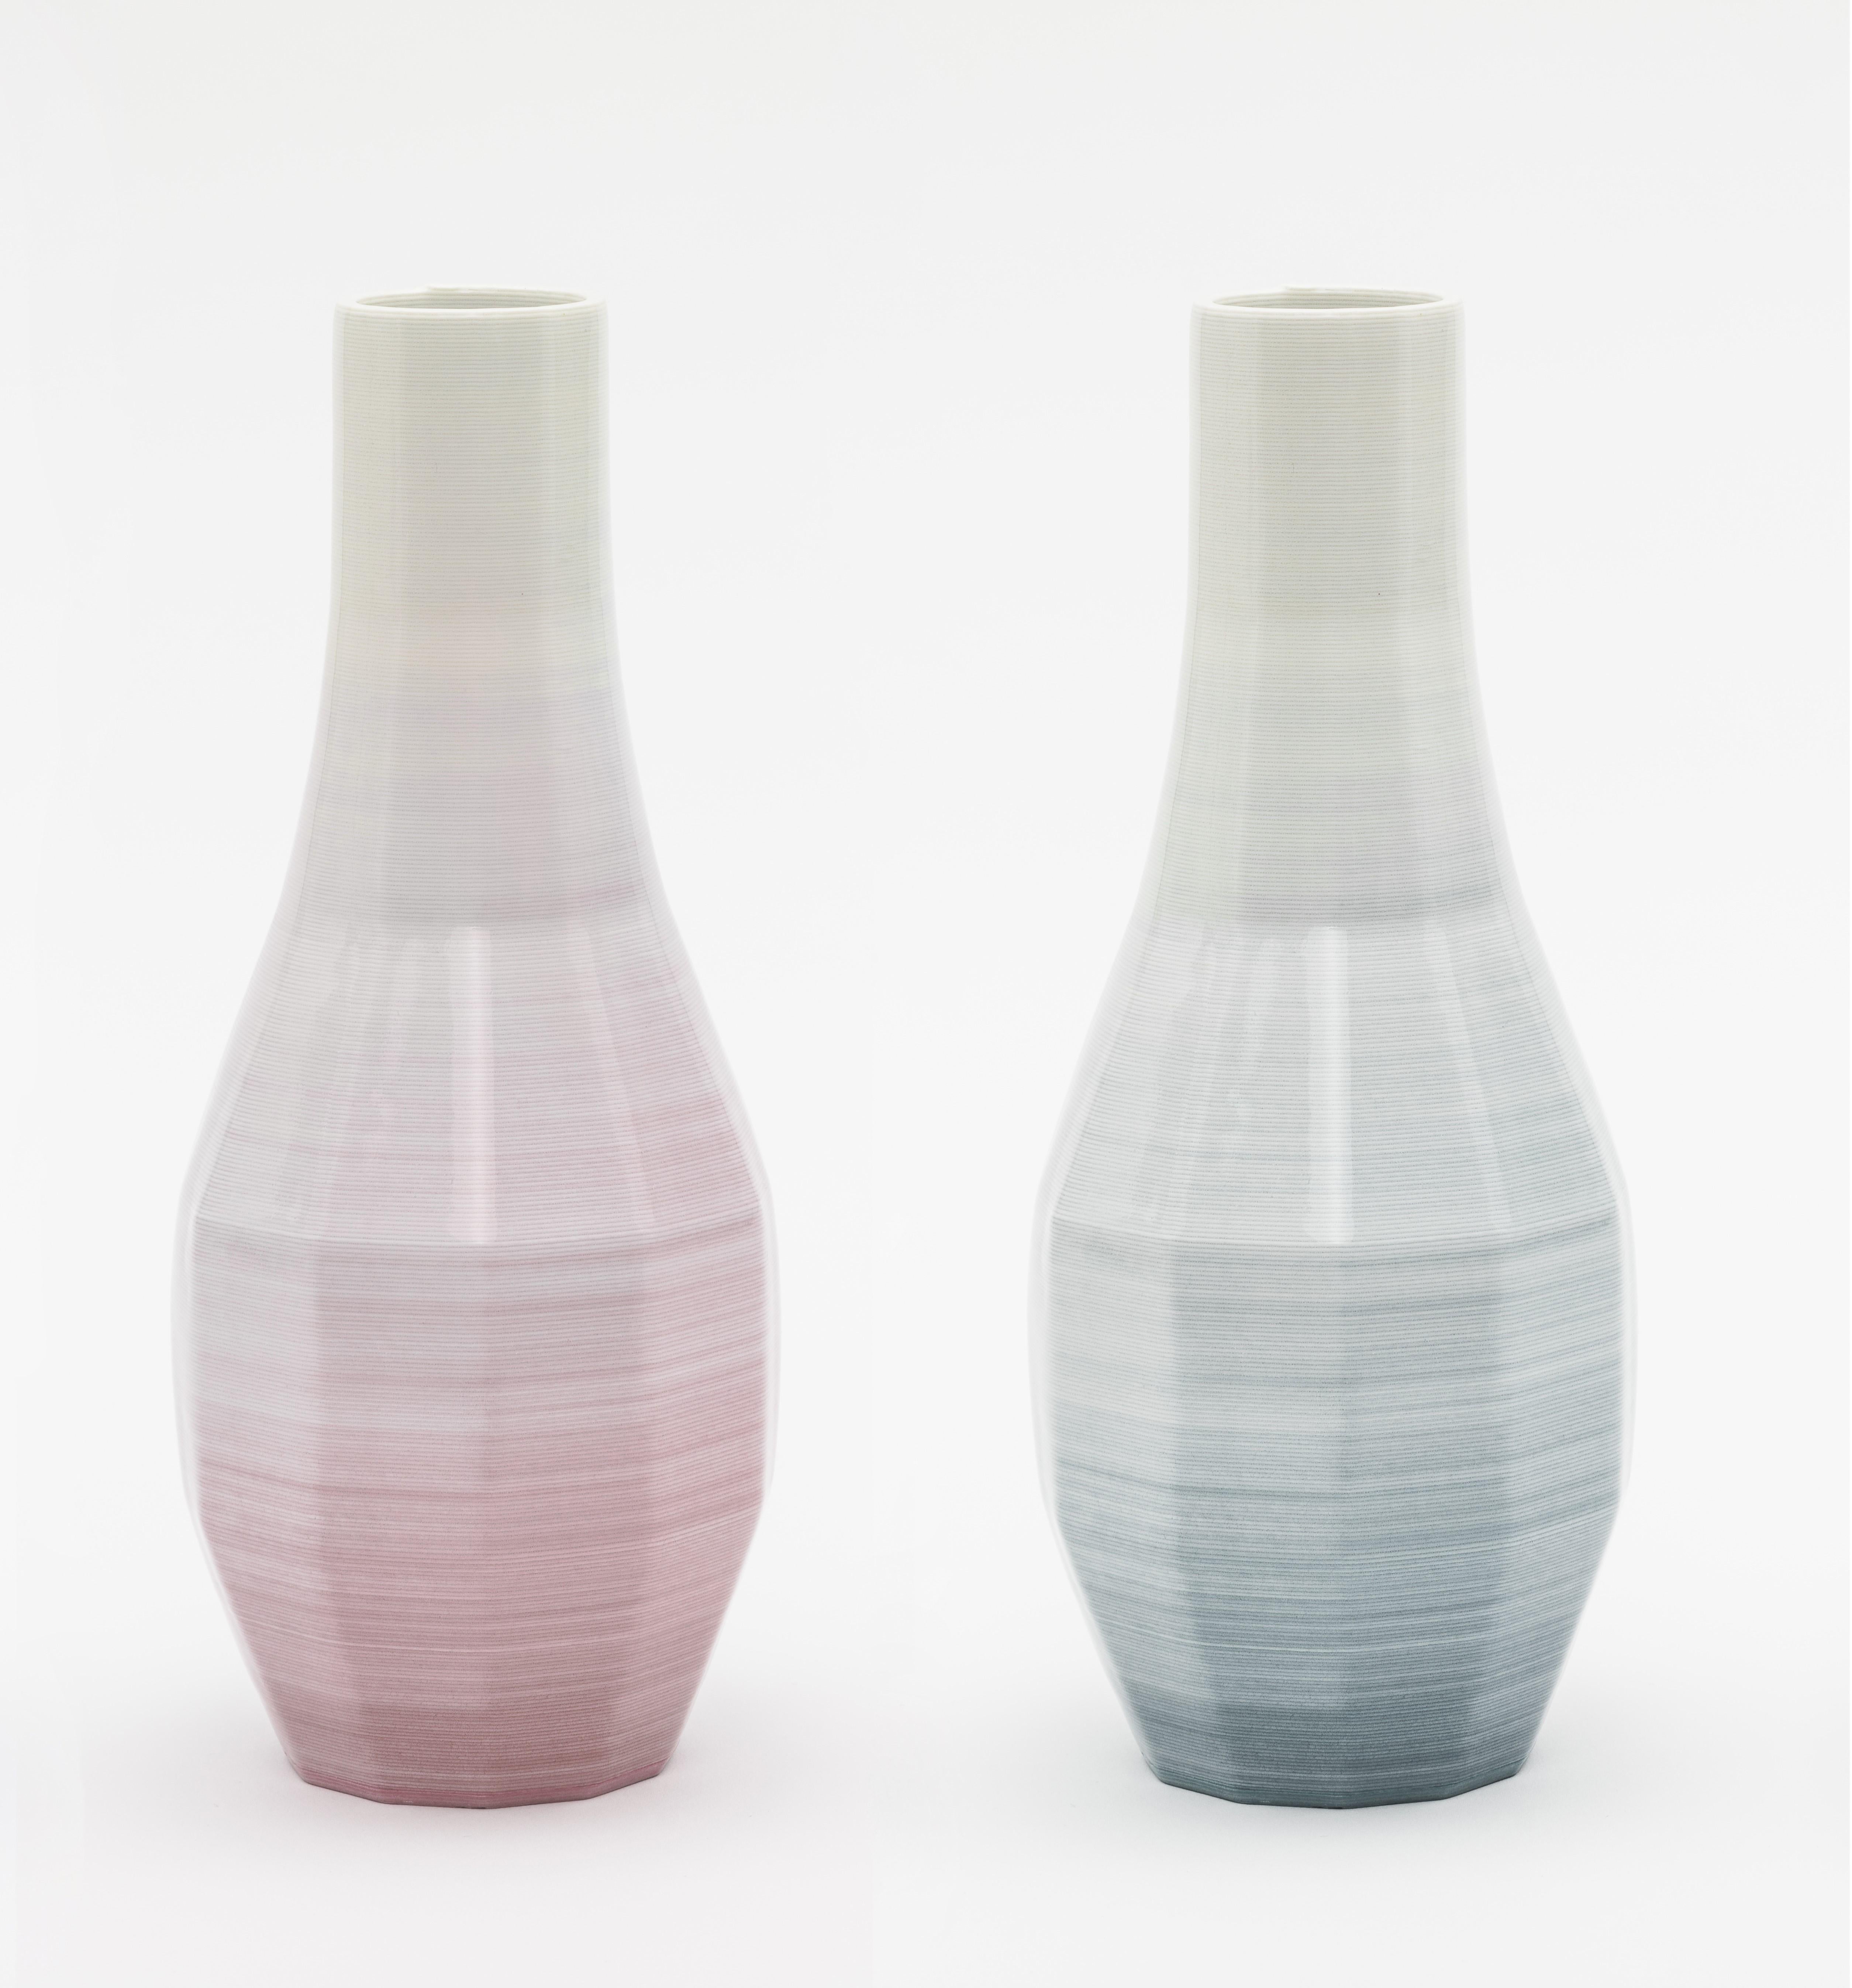 Austrian Set of 3 Small Porcelain Gradient Vase by Philipp Aduatz